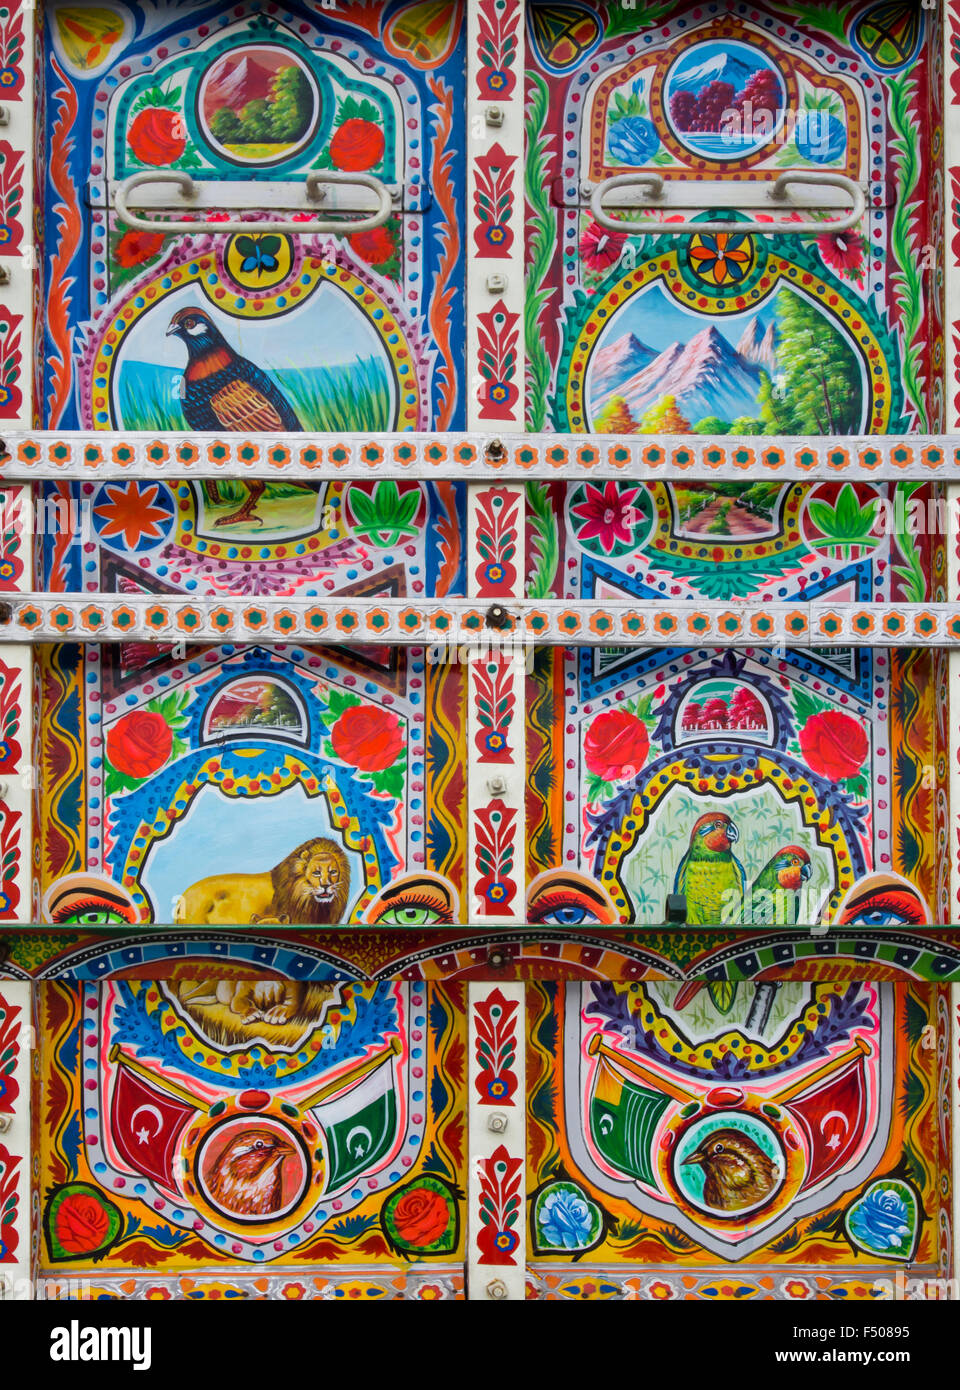 Dettagli da un elaborato e decorate artisticamente colorato camion Bedford in stile pakistano, zoomorfi Foto Stock